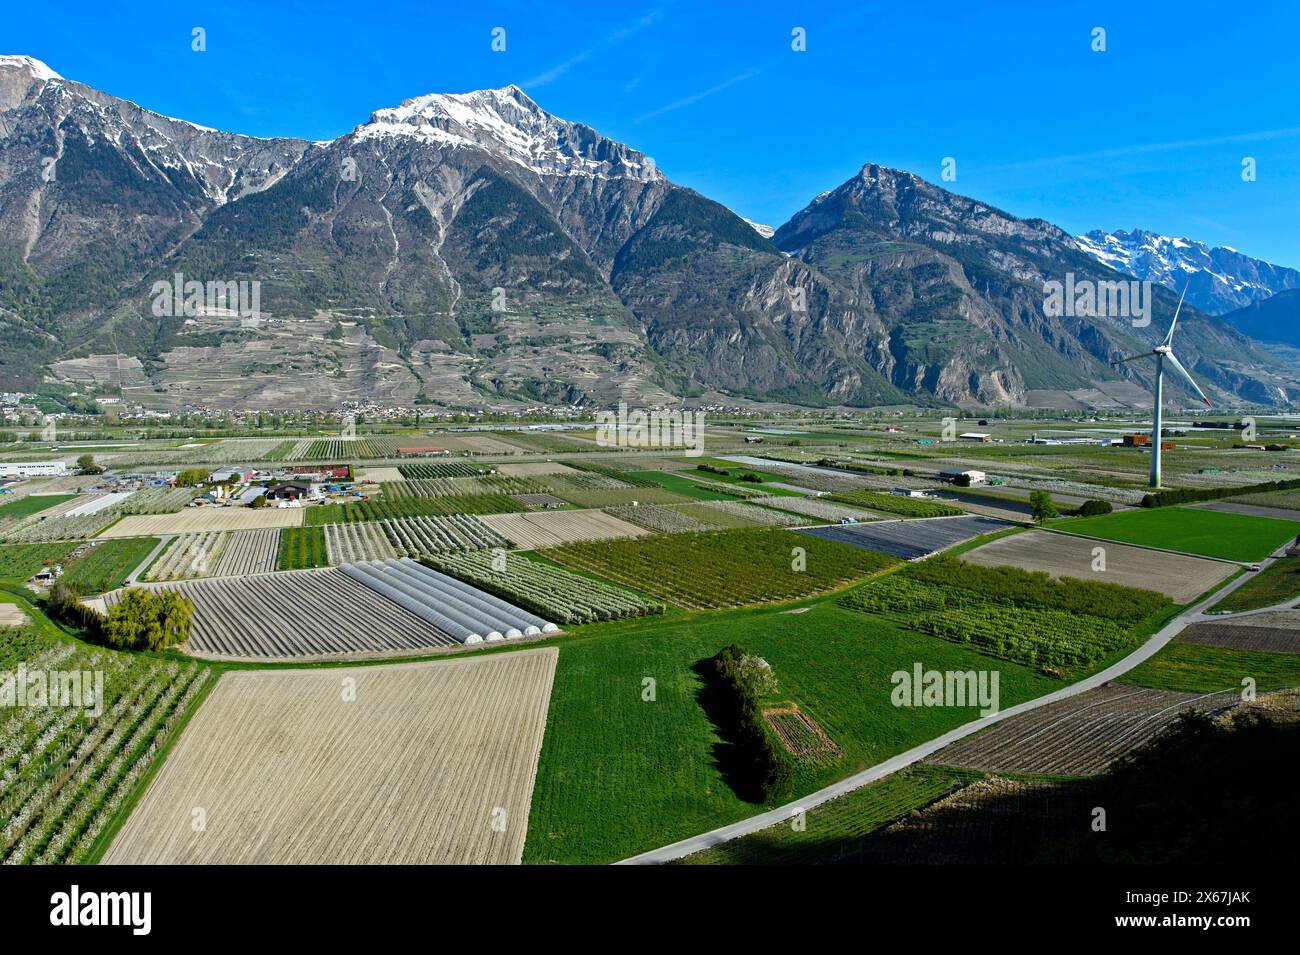 Campi e piantagioni per la coltivazione di frutta e verdura sotto la cima innevata del Grand Chavalard nella valle del Rodano, Charrat, Vallese, Svizzera Foto Stock